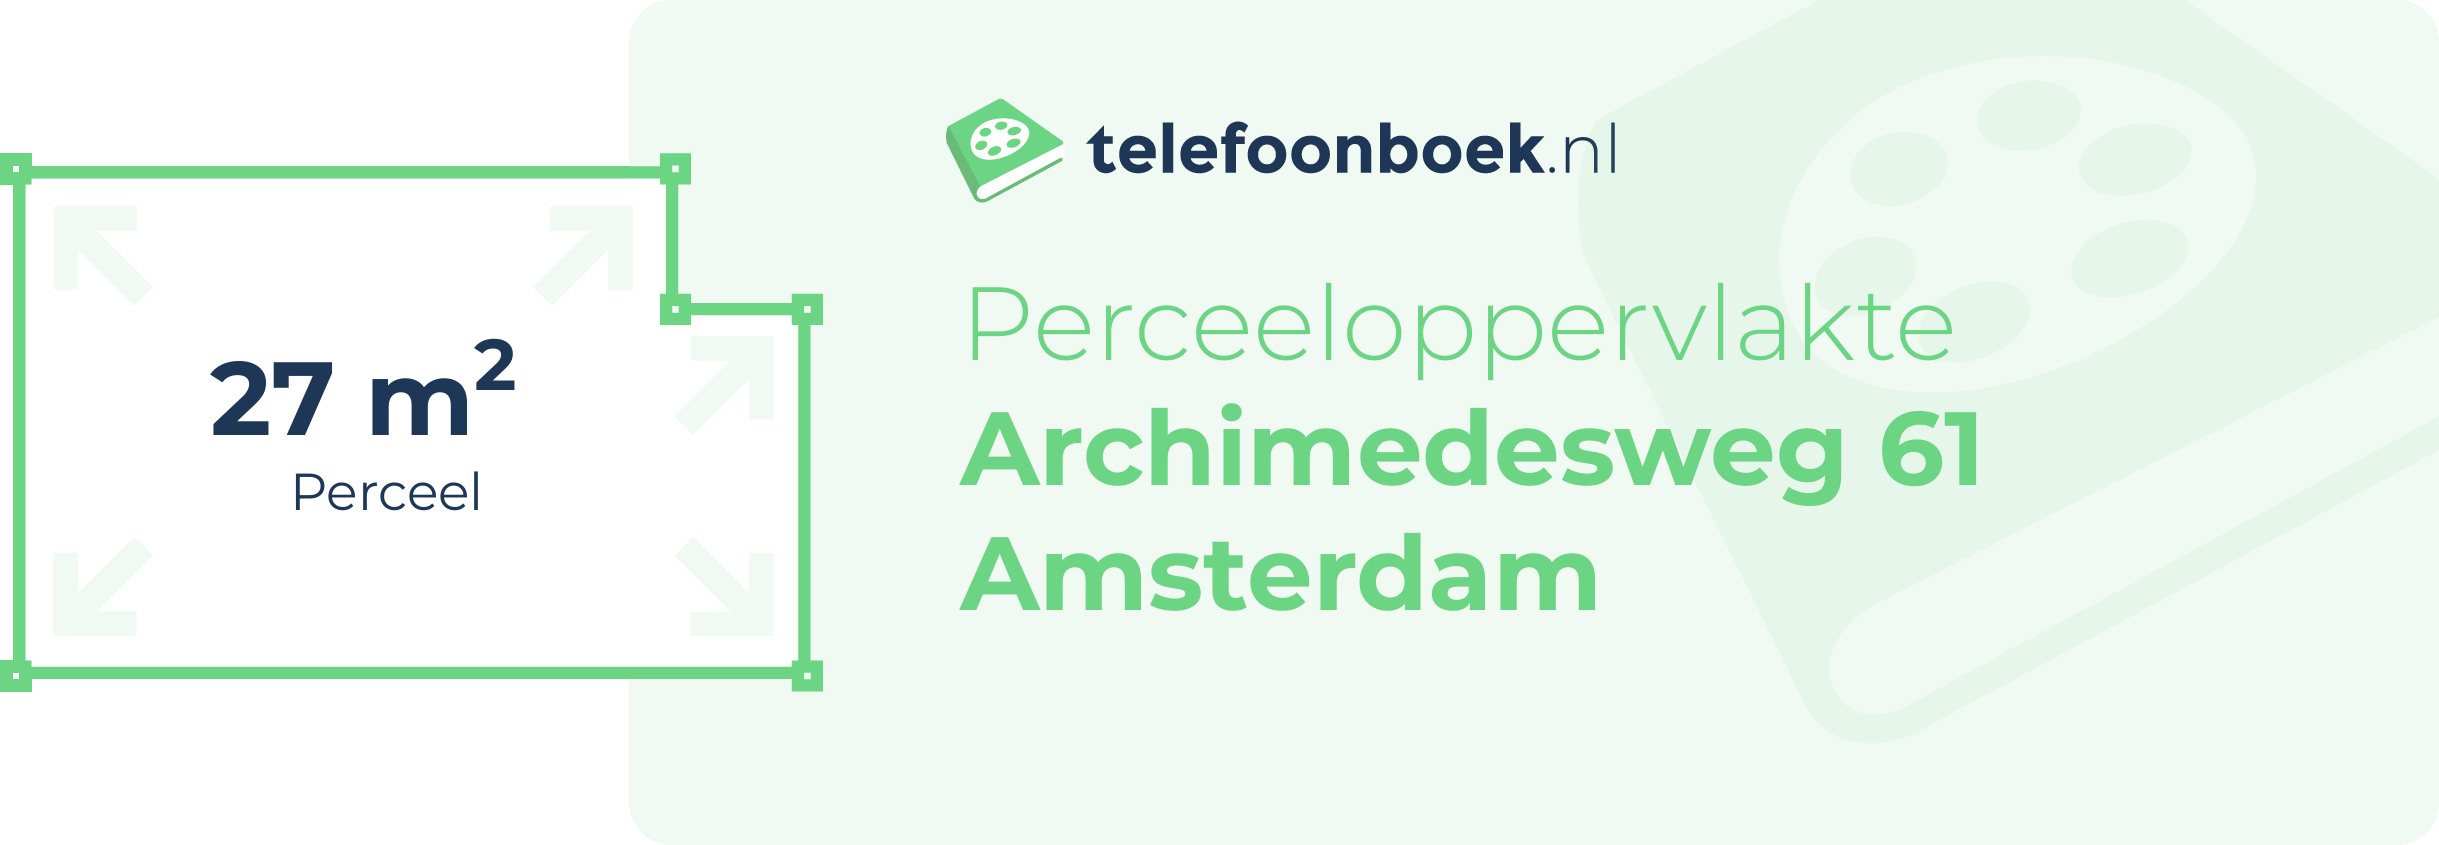 Perceeloppervlakte Archimedesweg 61 Amsterdam